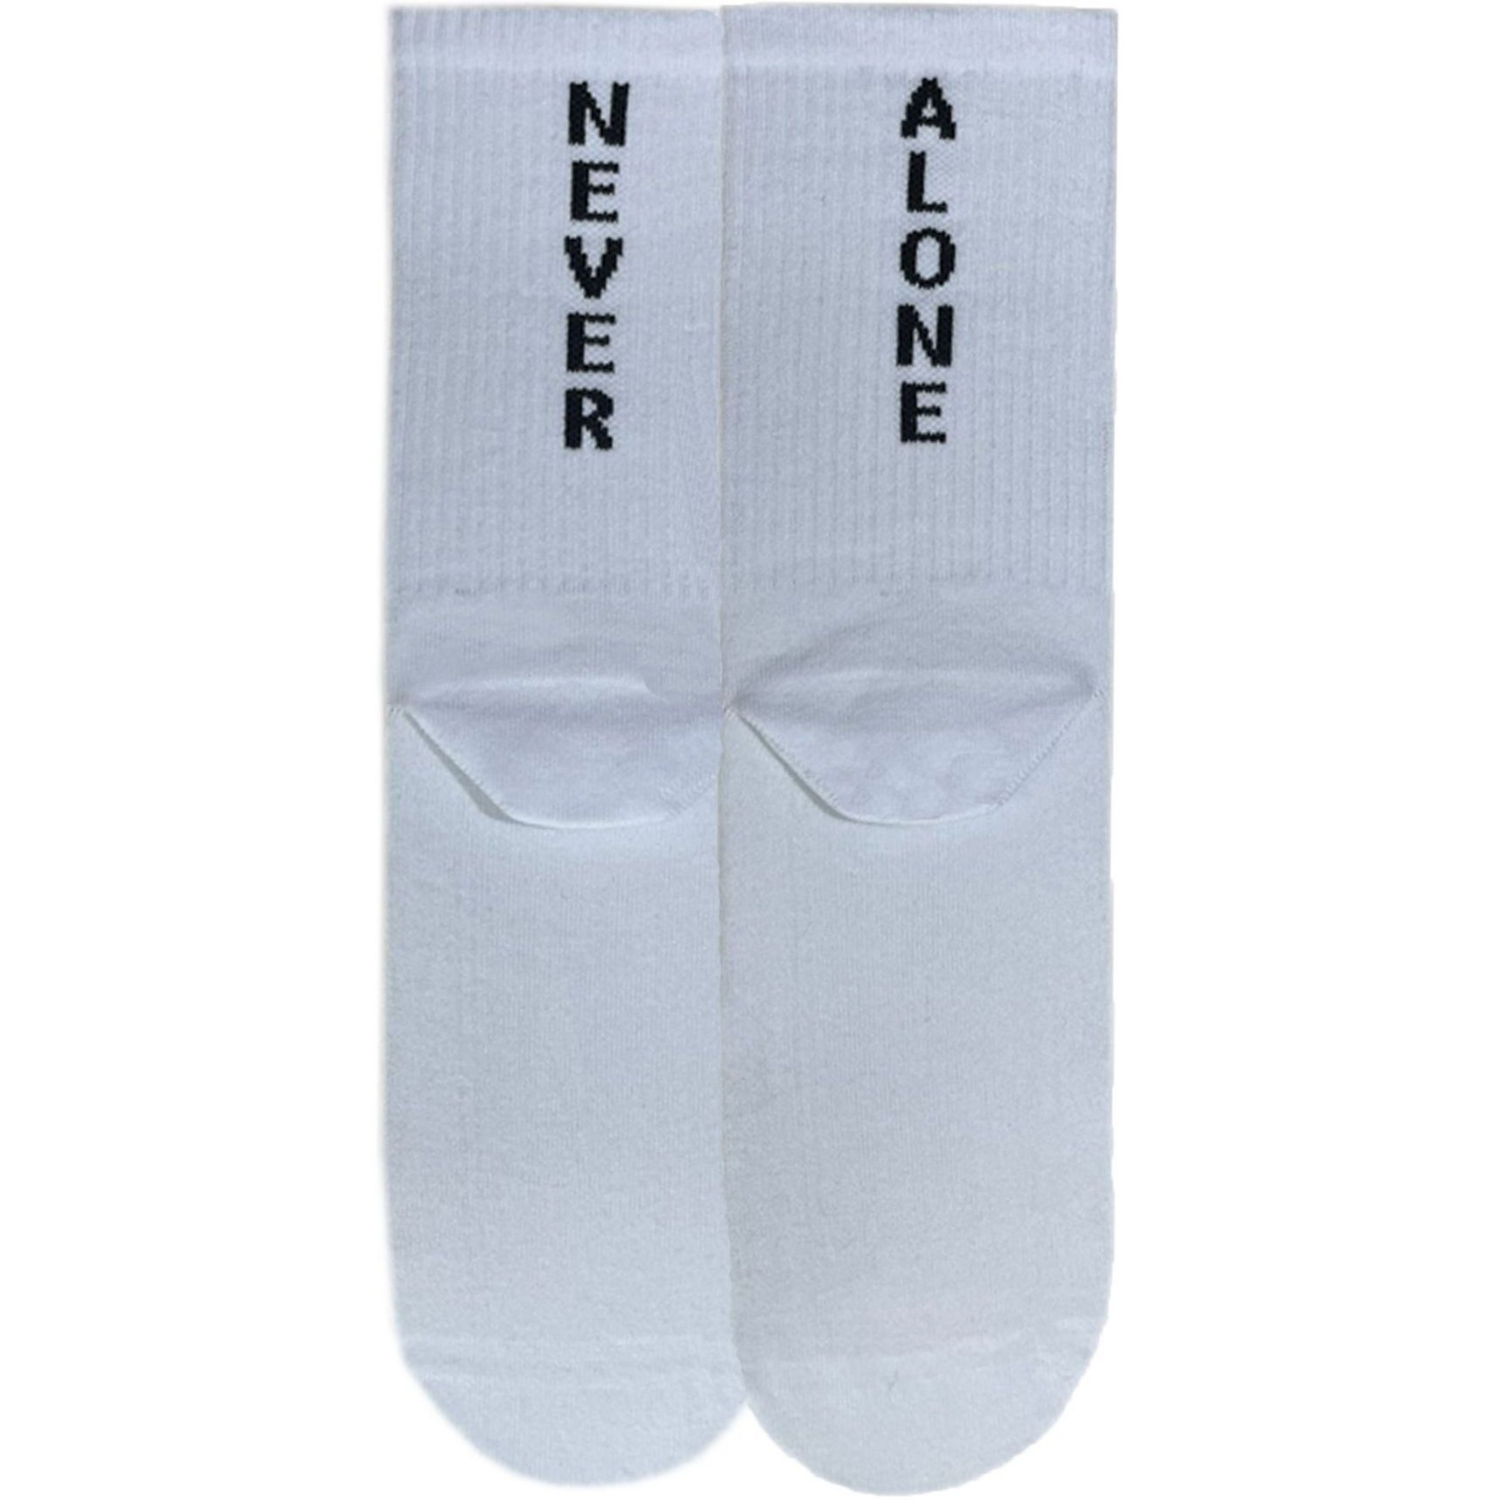 Носки мужские Premier Socks 44-45 1 пара белые с принтом (4820163317939) фото 